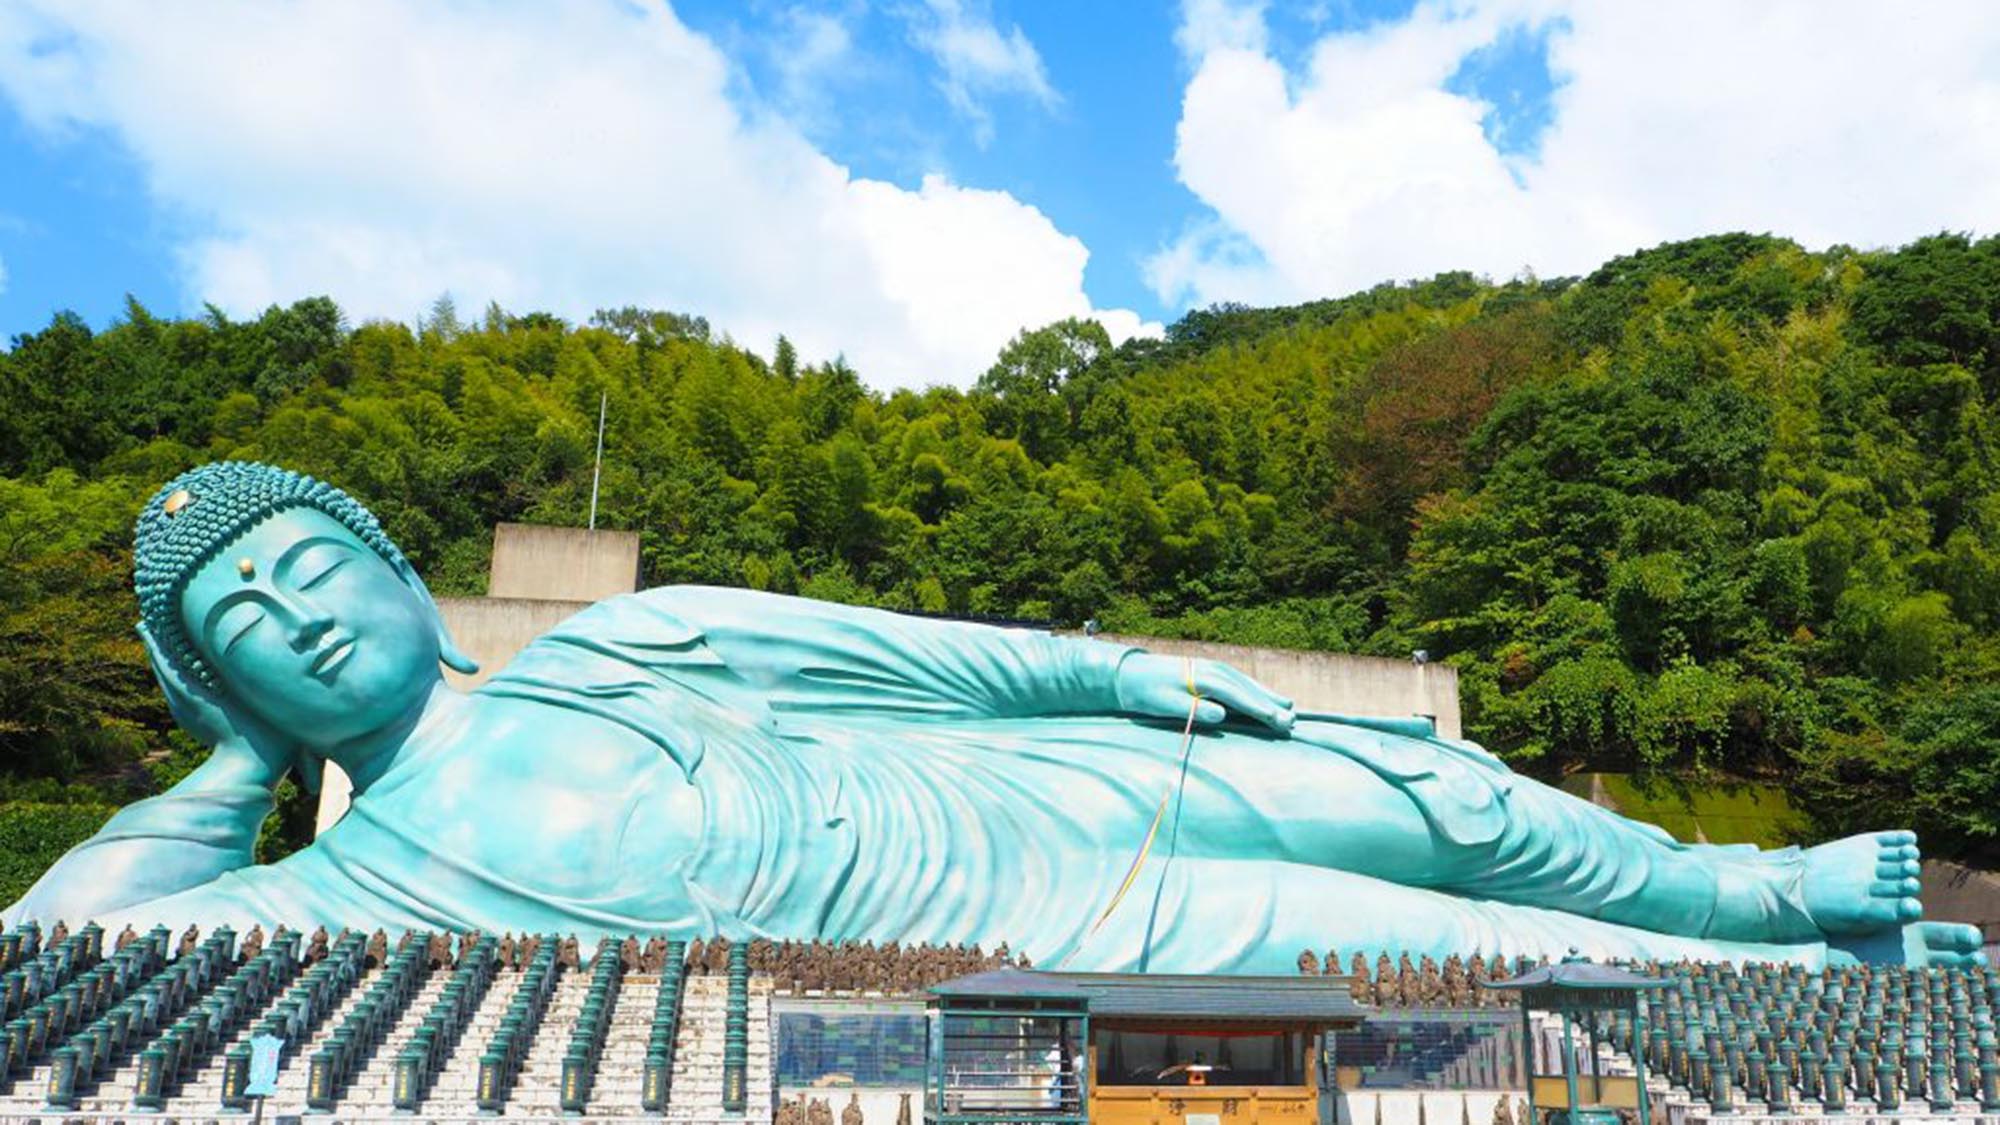 【南蔵院】世界一の大きさを誇るブロンズ製の釈迦涅槃像がある場。当館より車で30分／電車で50分。